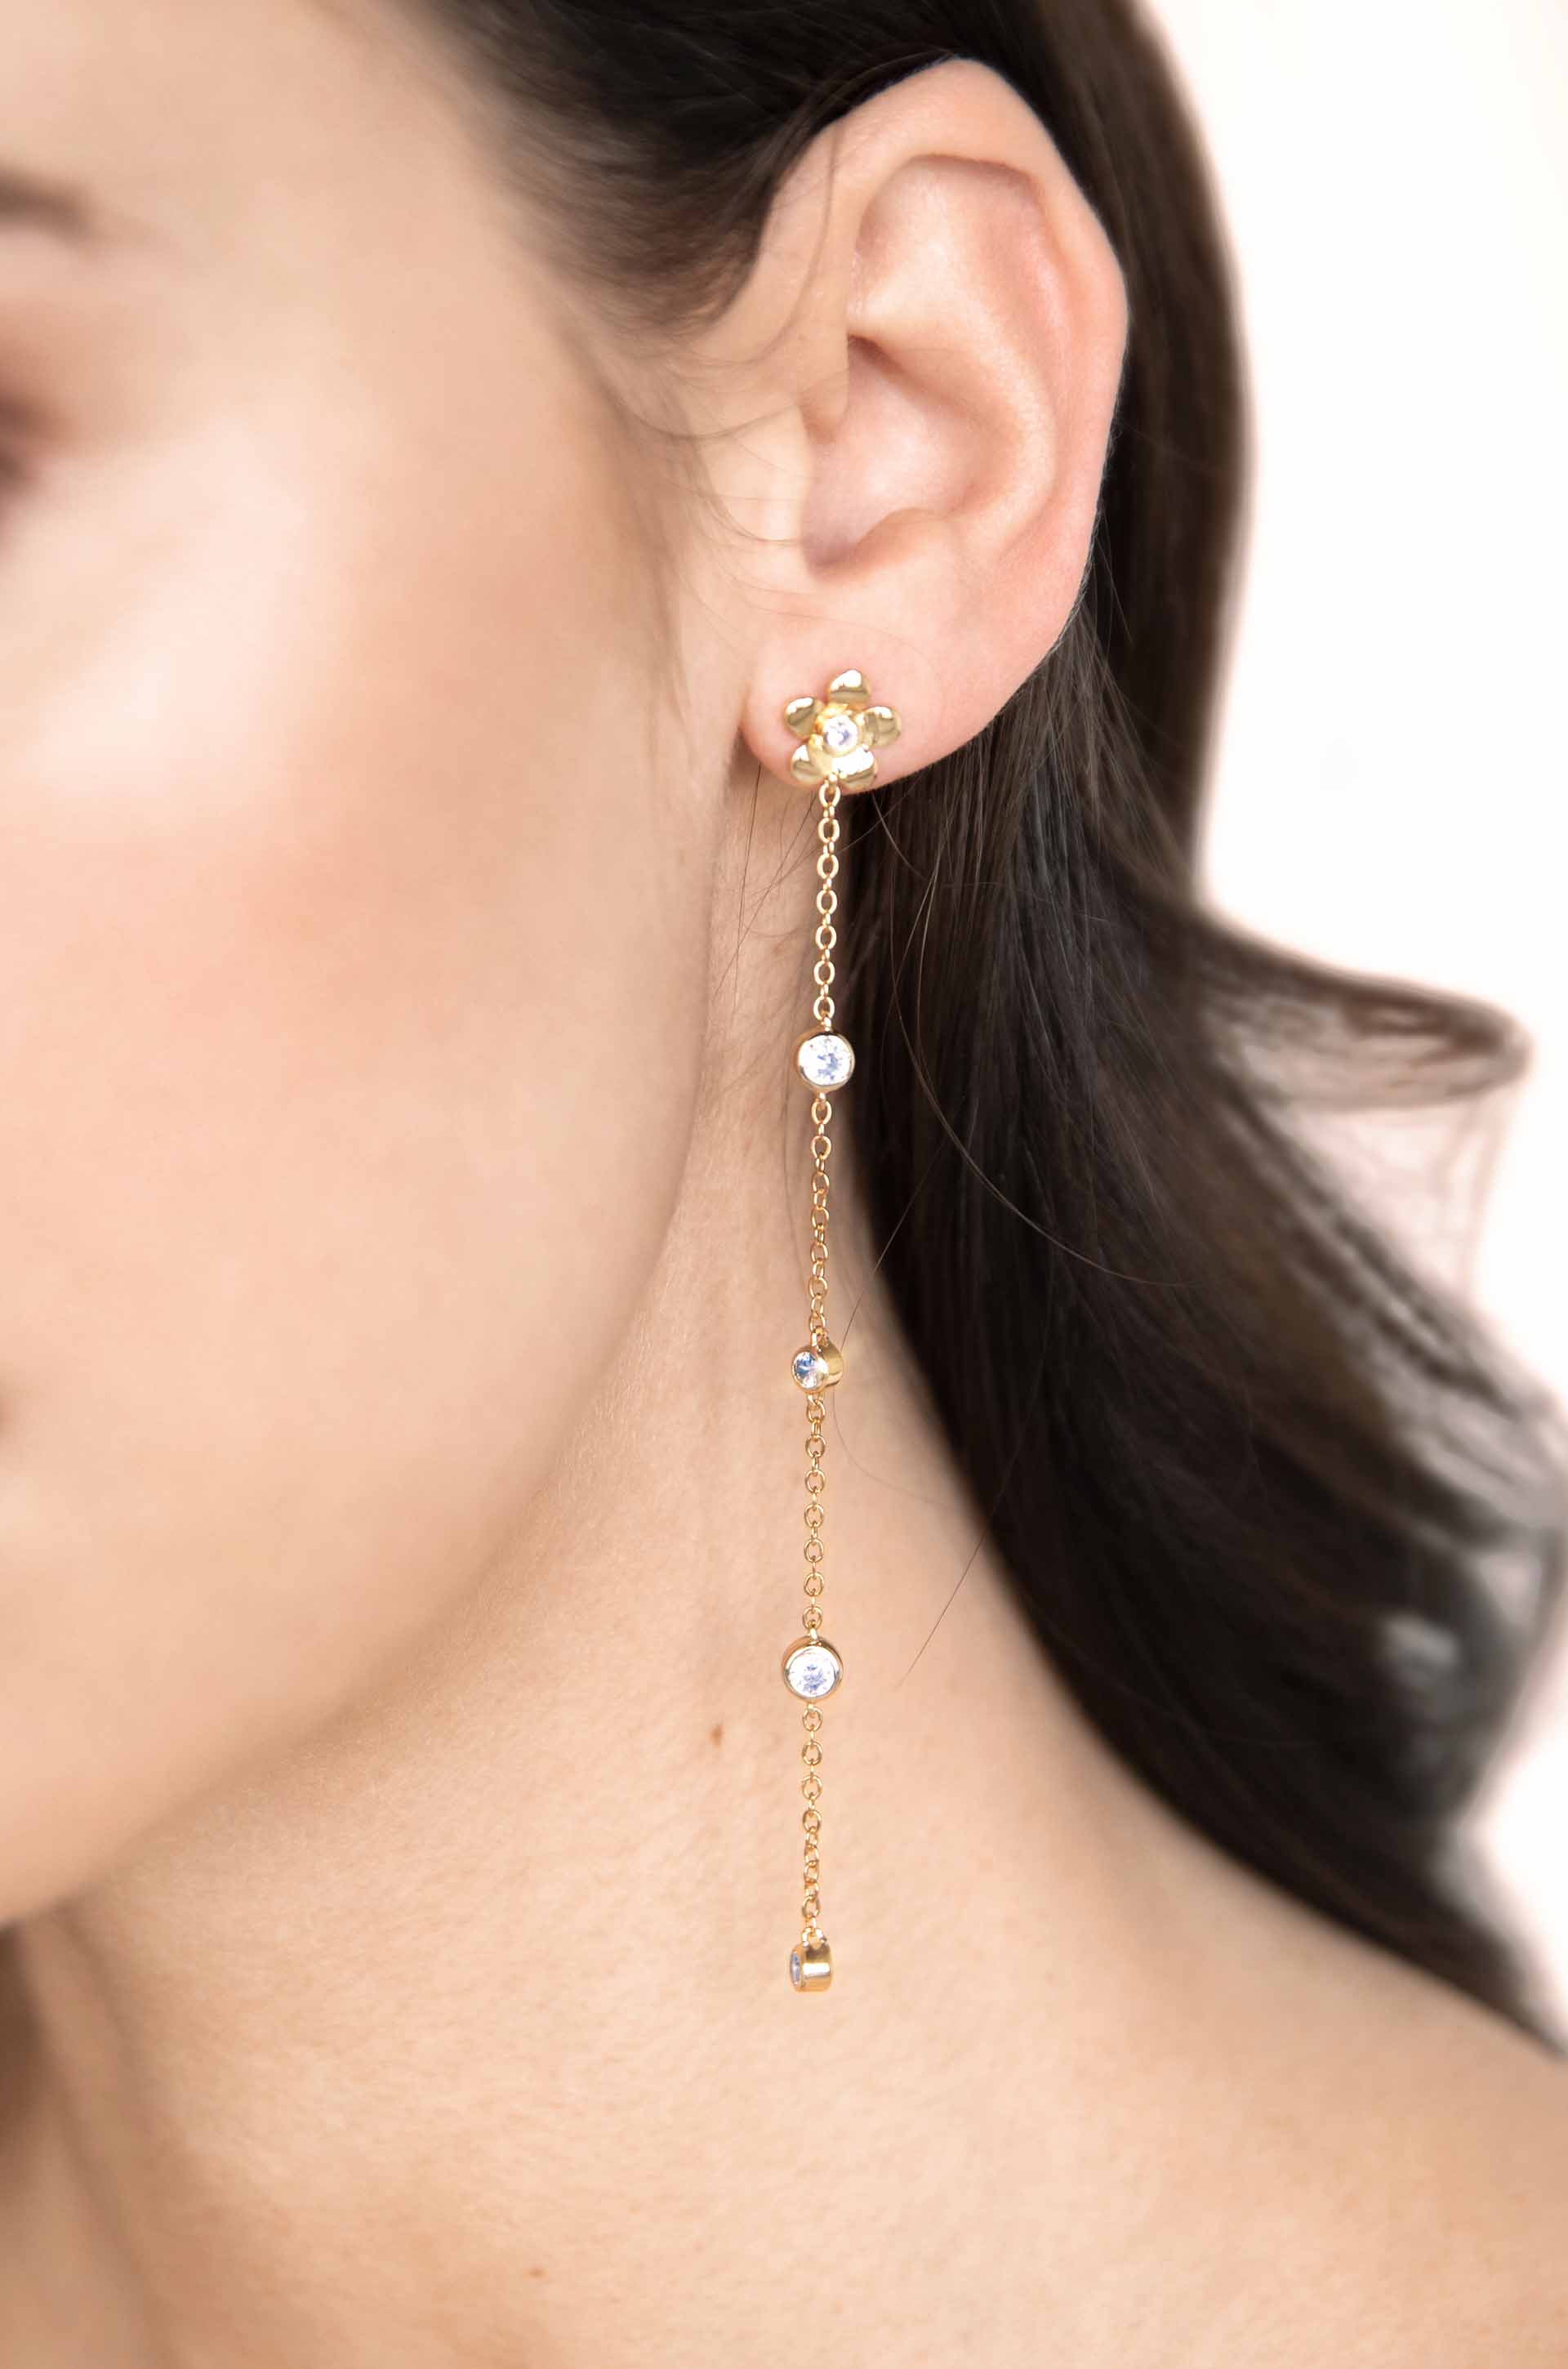 Single Flower Linear Dangle 18k Gold Plated Earrings on a model